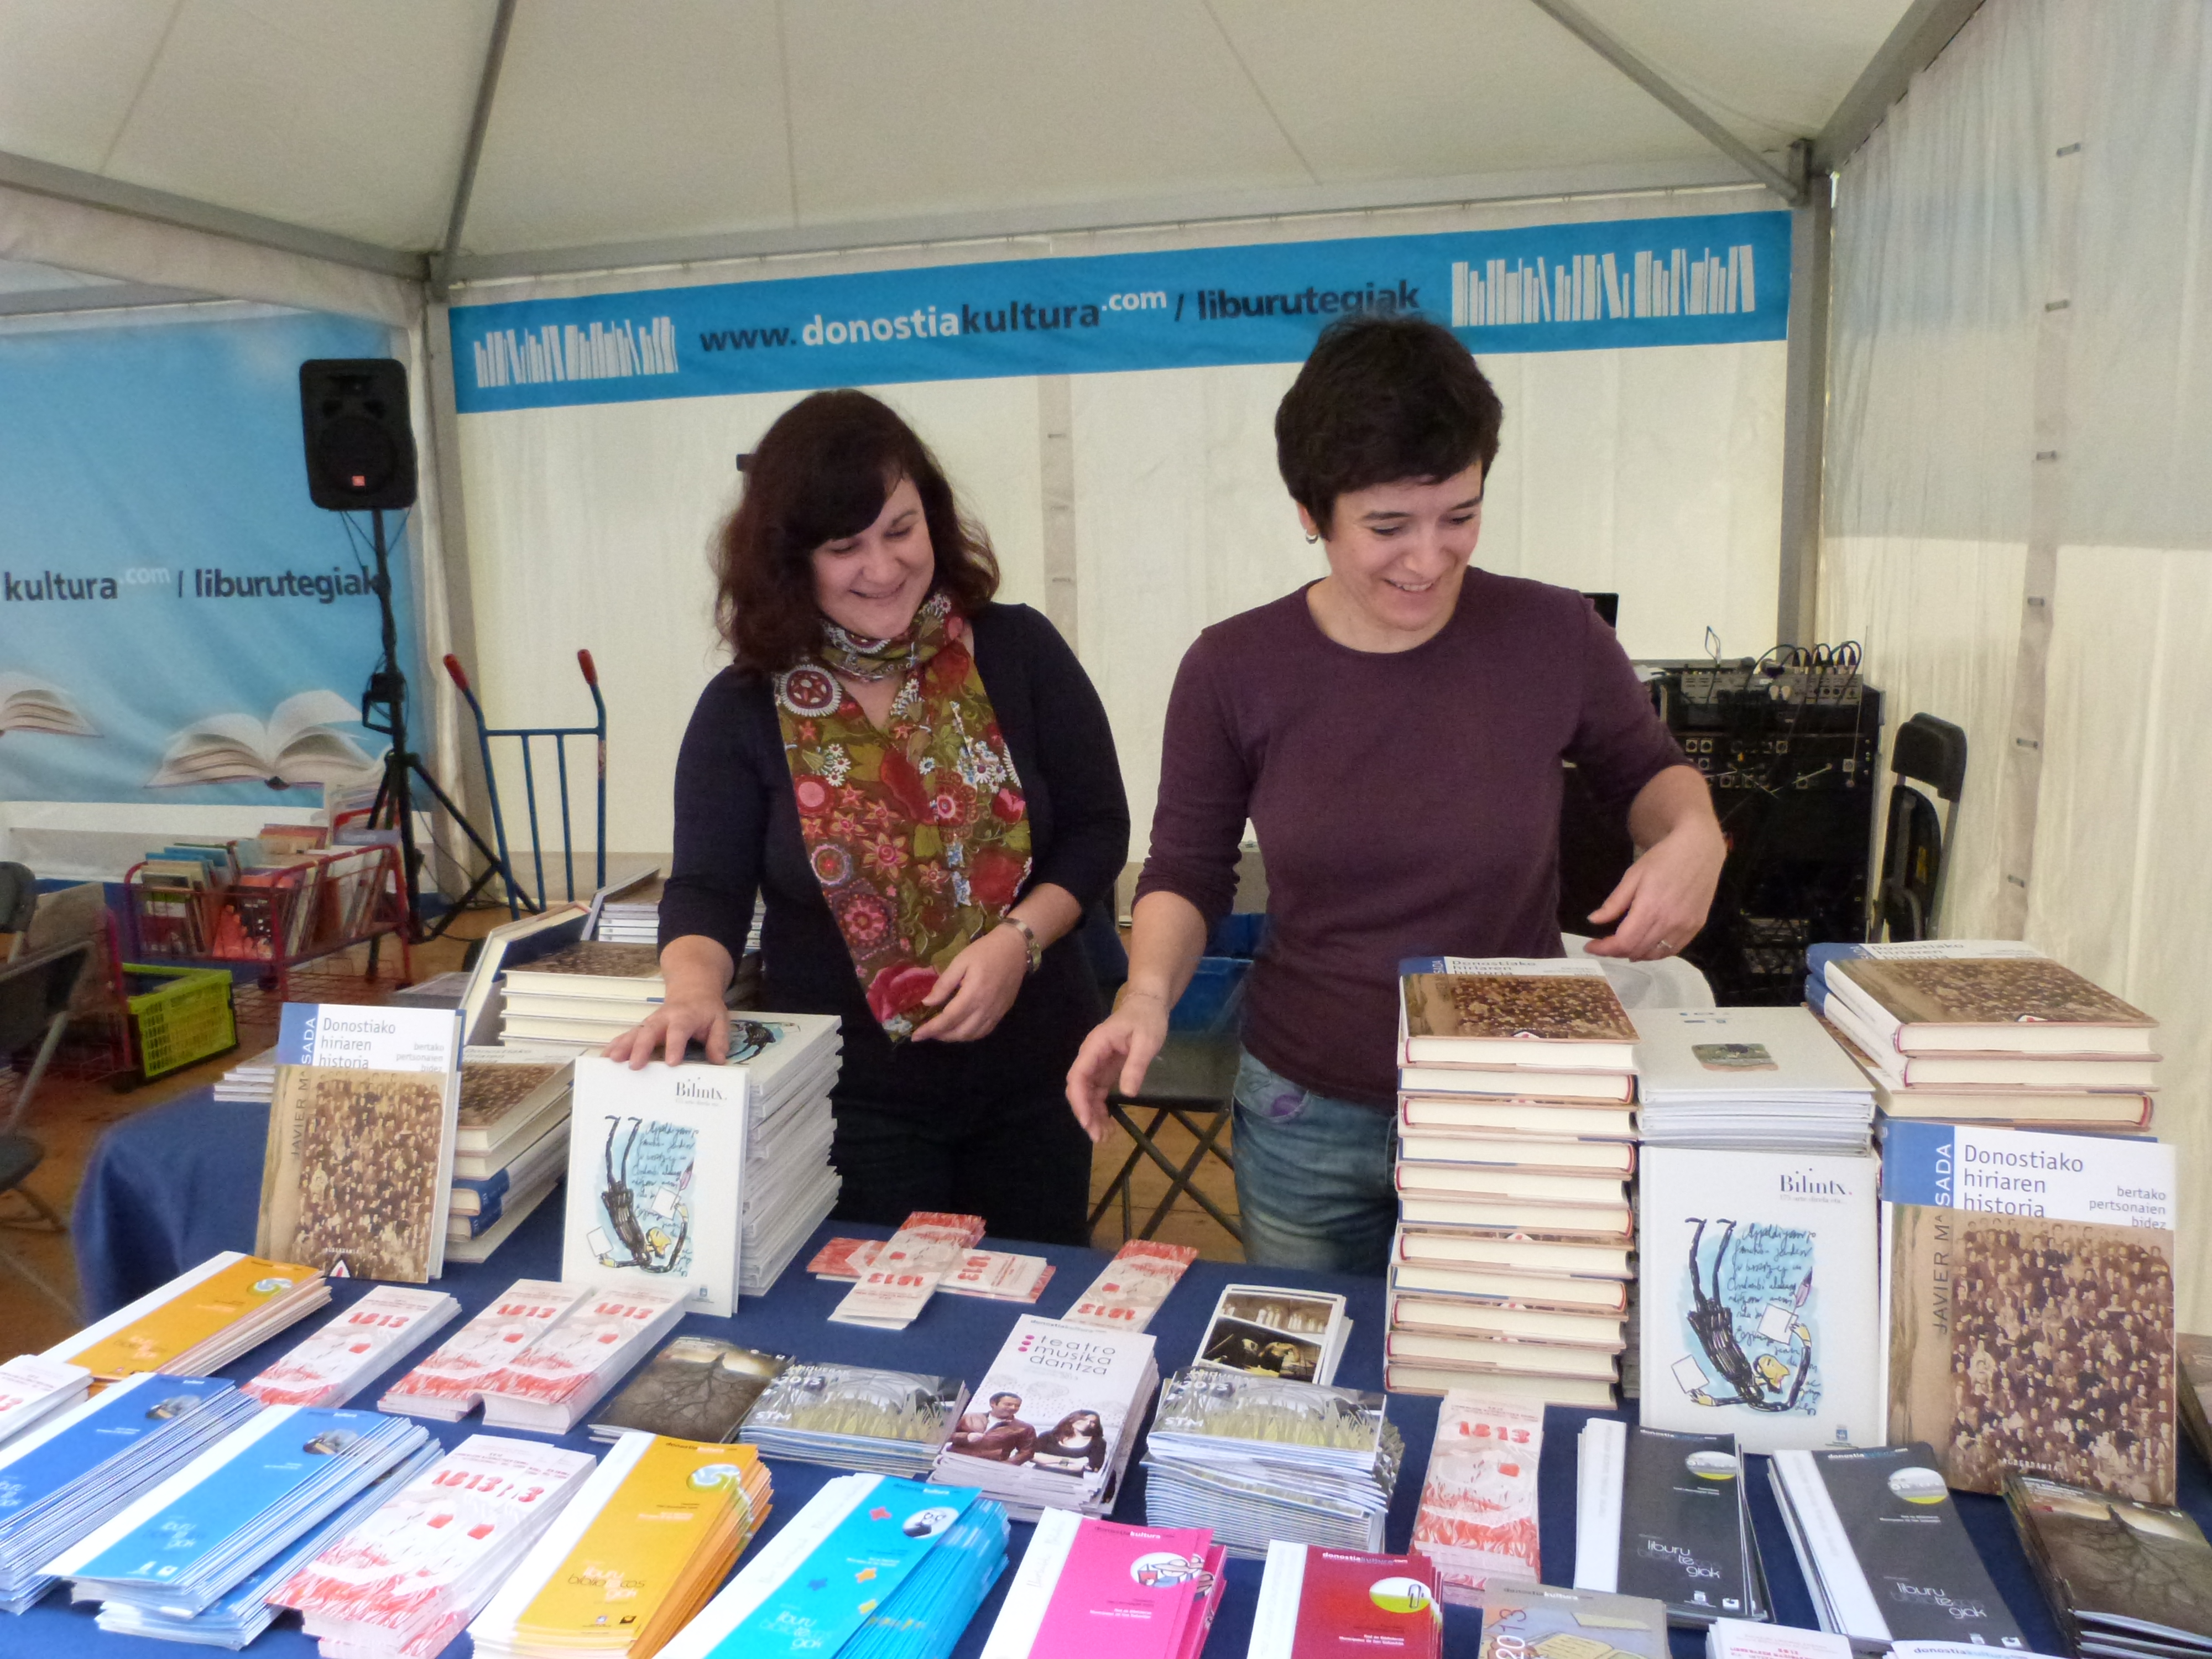 Día Internacional del libro 2013. Stand del servicio bibliotecario municipal San Sebastián